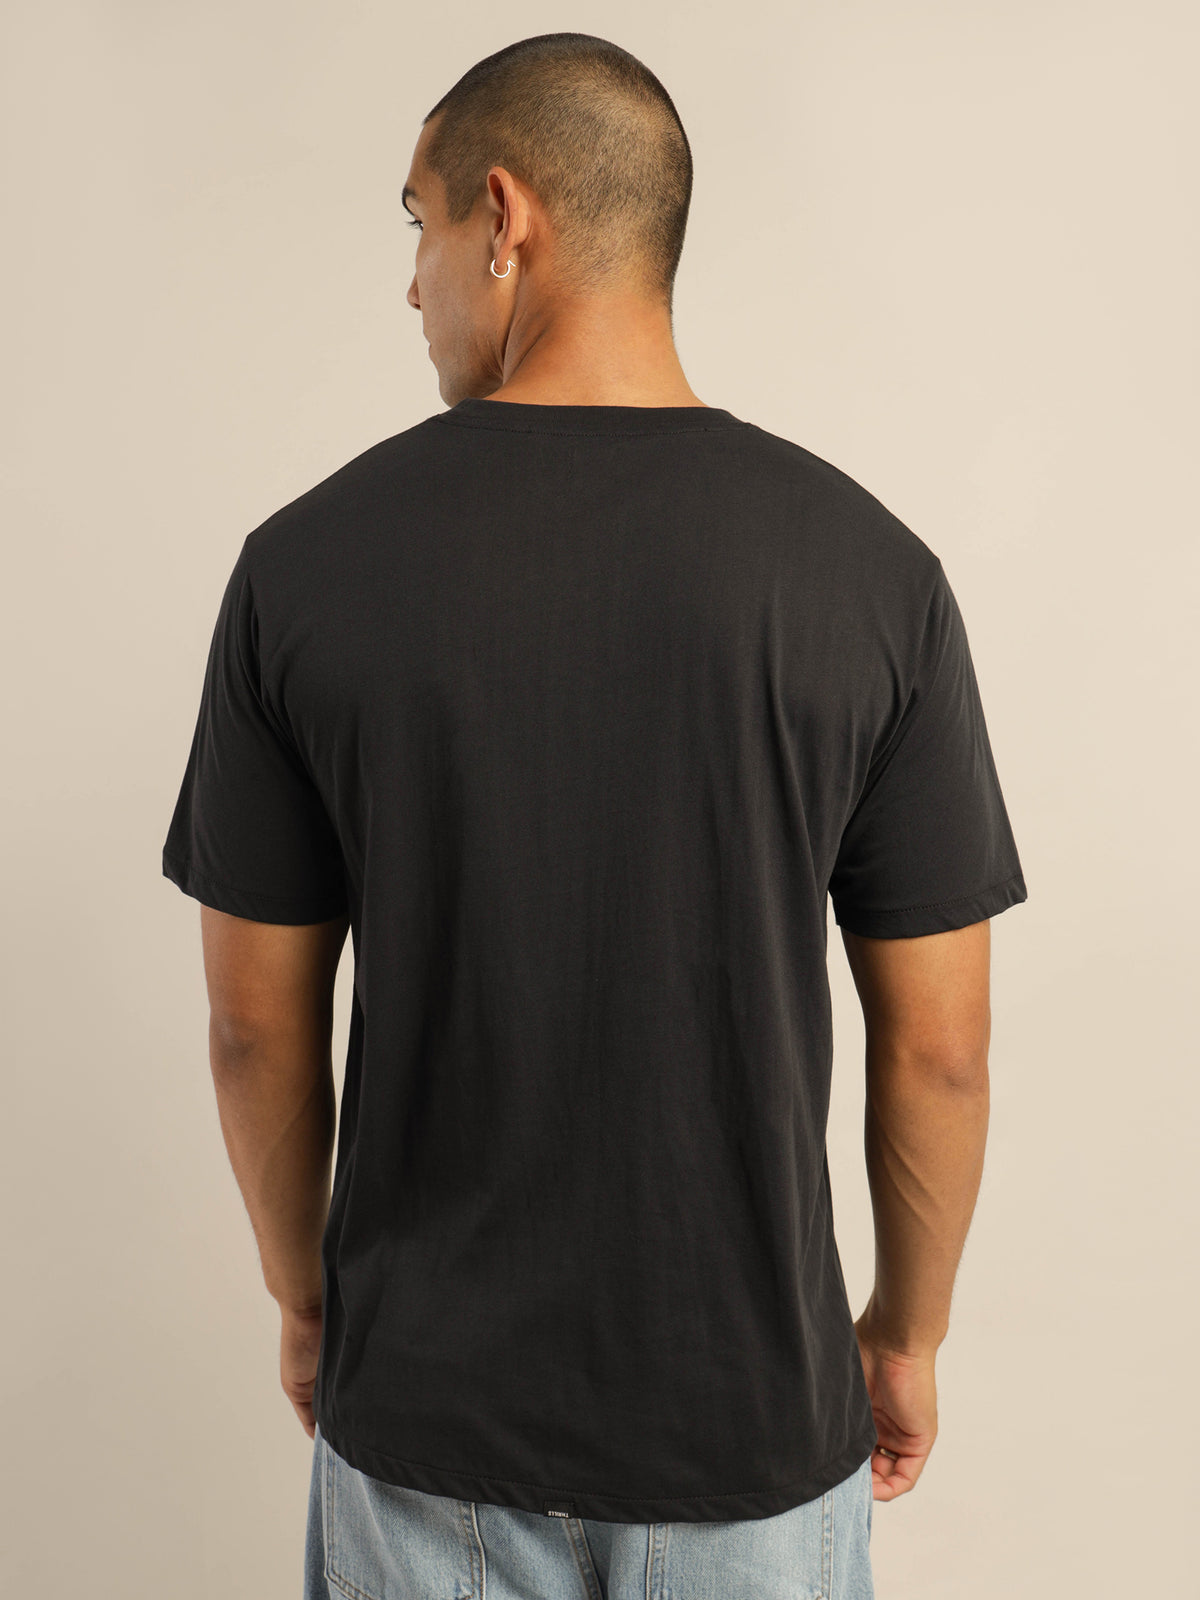 Minimal Thrills Merch Fit T-Shirt in Vintage Black